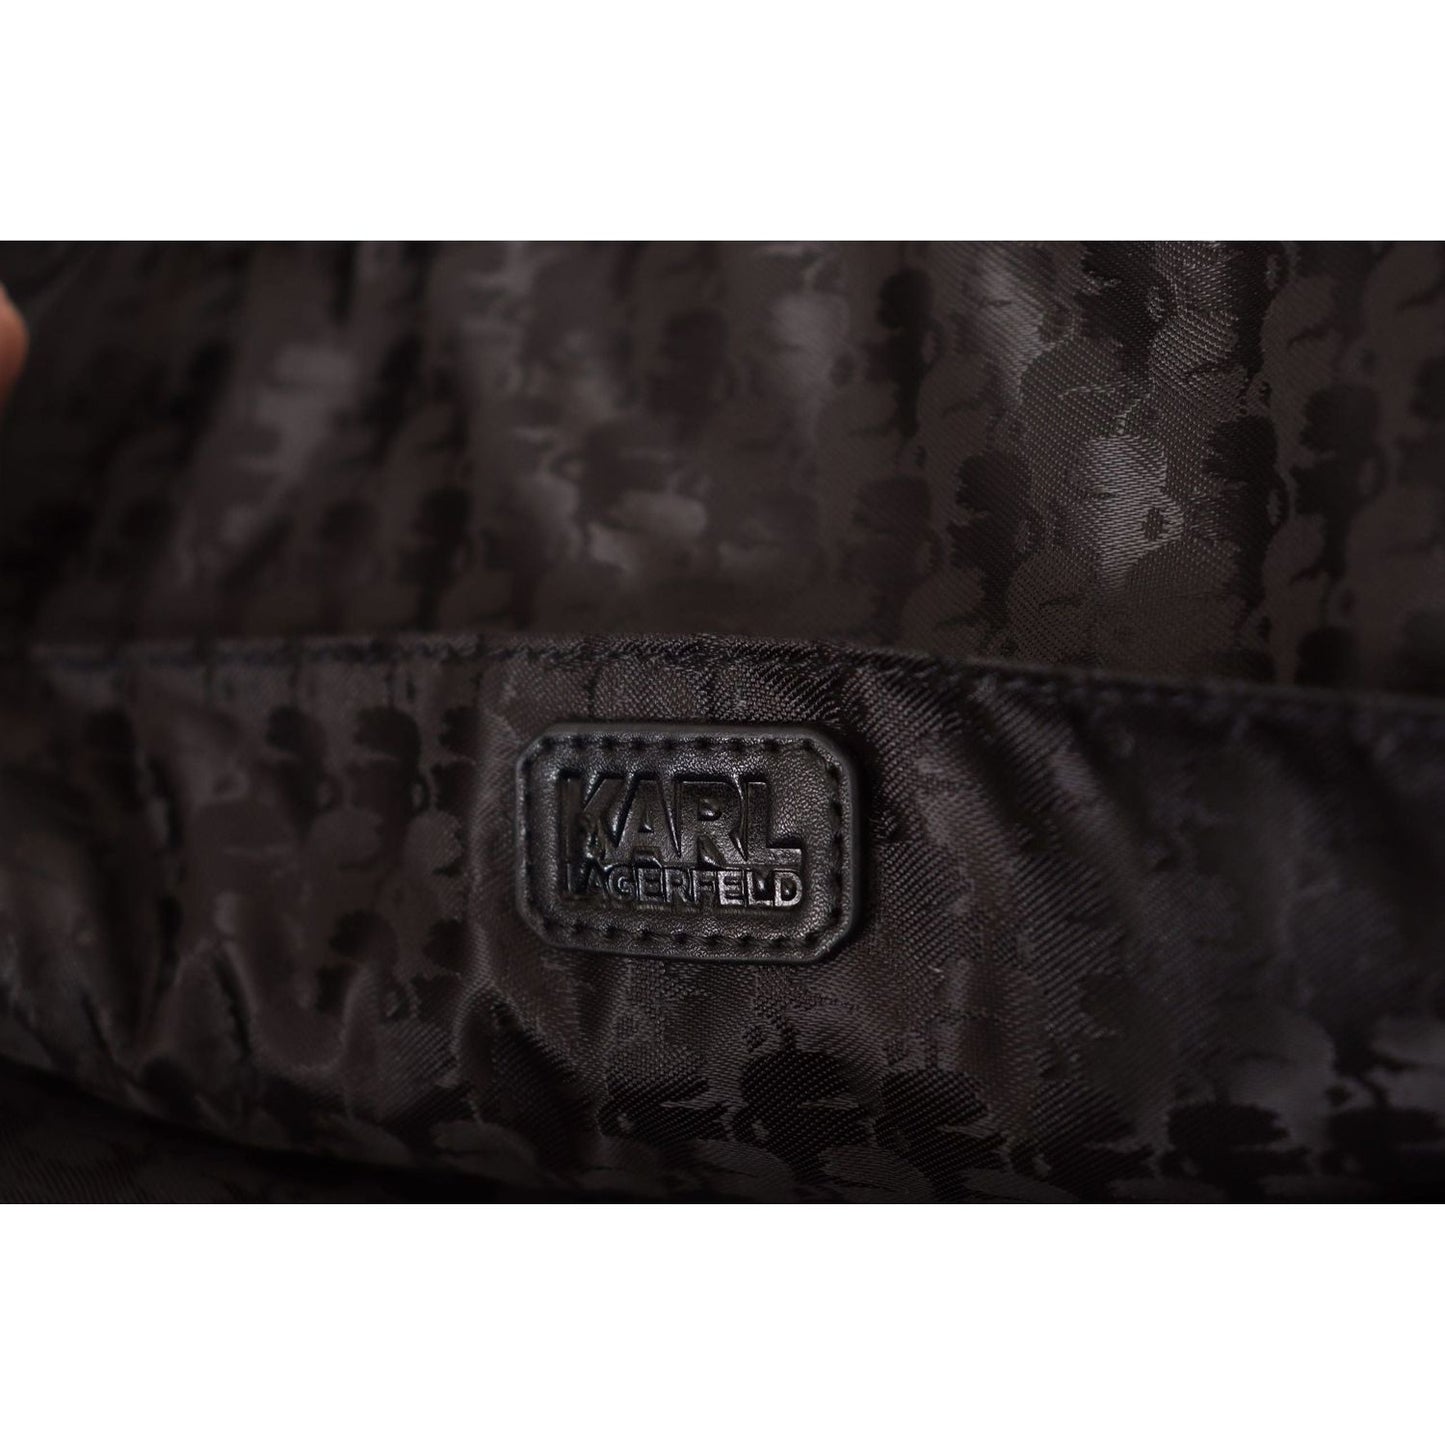 Karl Lagerfeld Sleek Nylon Laptop Crossbody Bag For Sophisticated Style black-nylon-laptop-crossbody-bag IMG_7554-scaled-58bd66ec-046.jpg